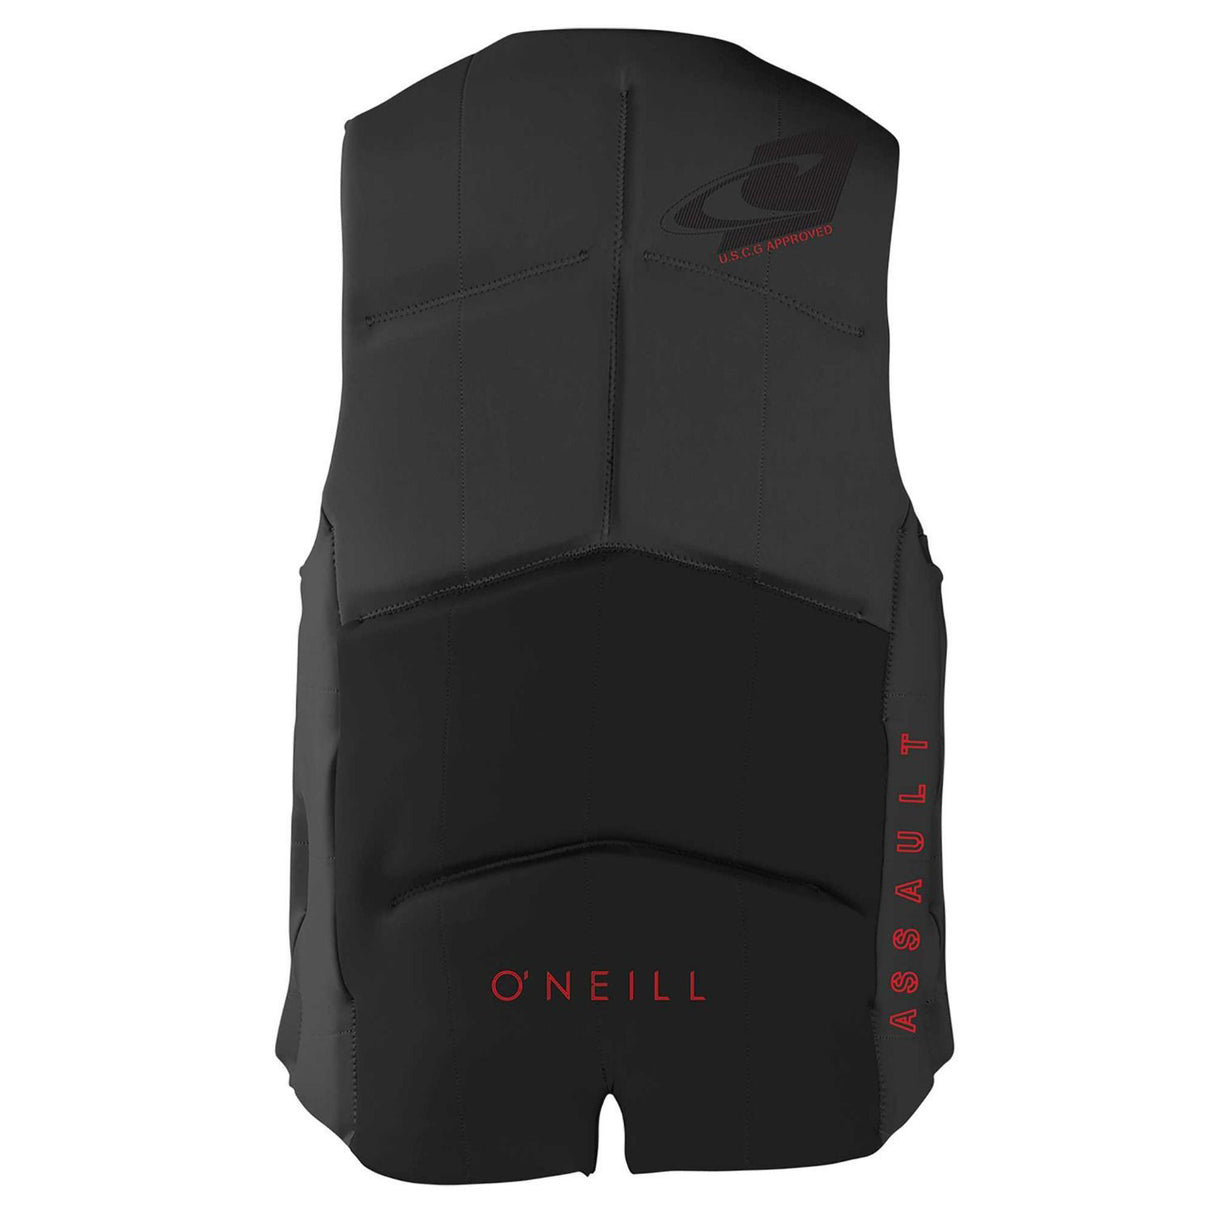 O'Neill Men's Assault Life Jacket